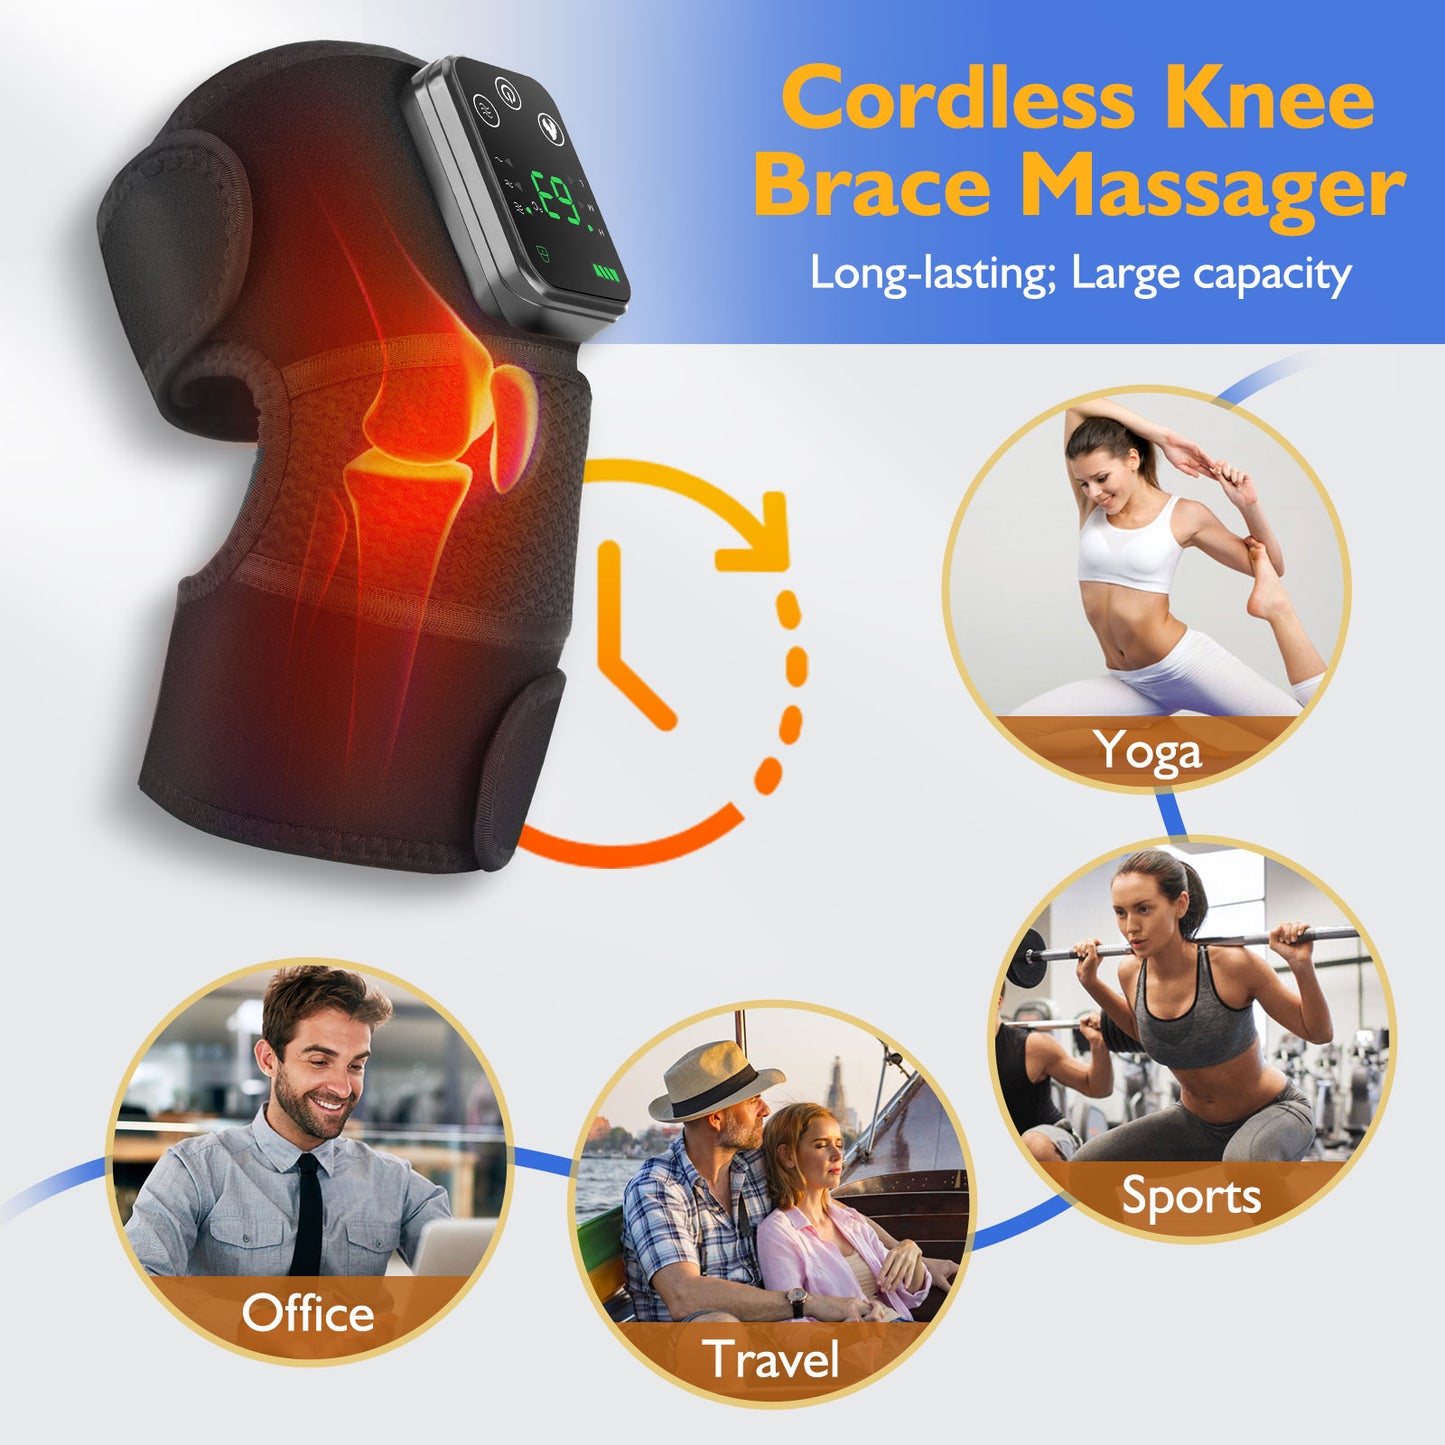 Knee Heating Massager